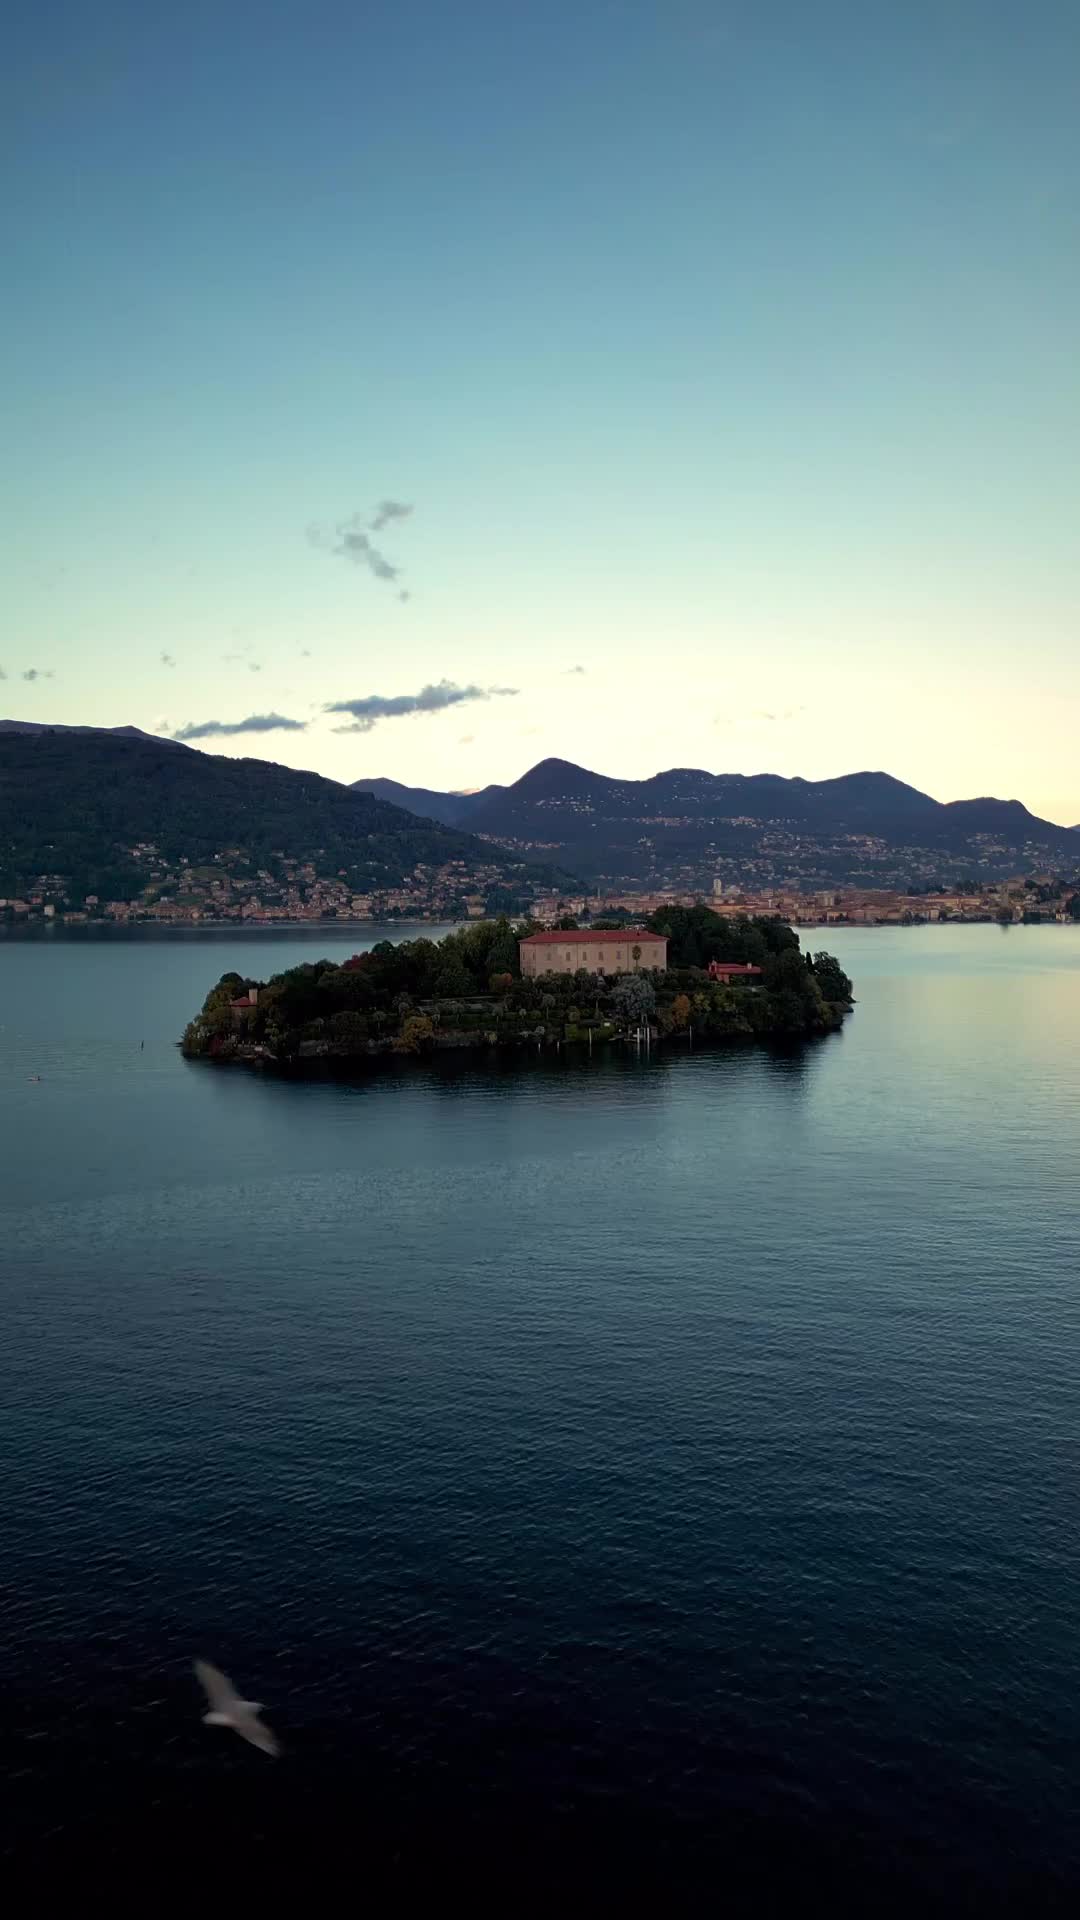 Explore Isola Madre on Lake Maggiore, Italy